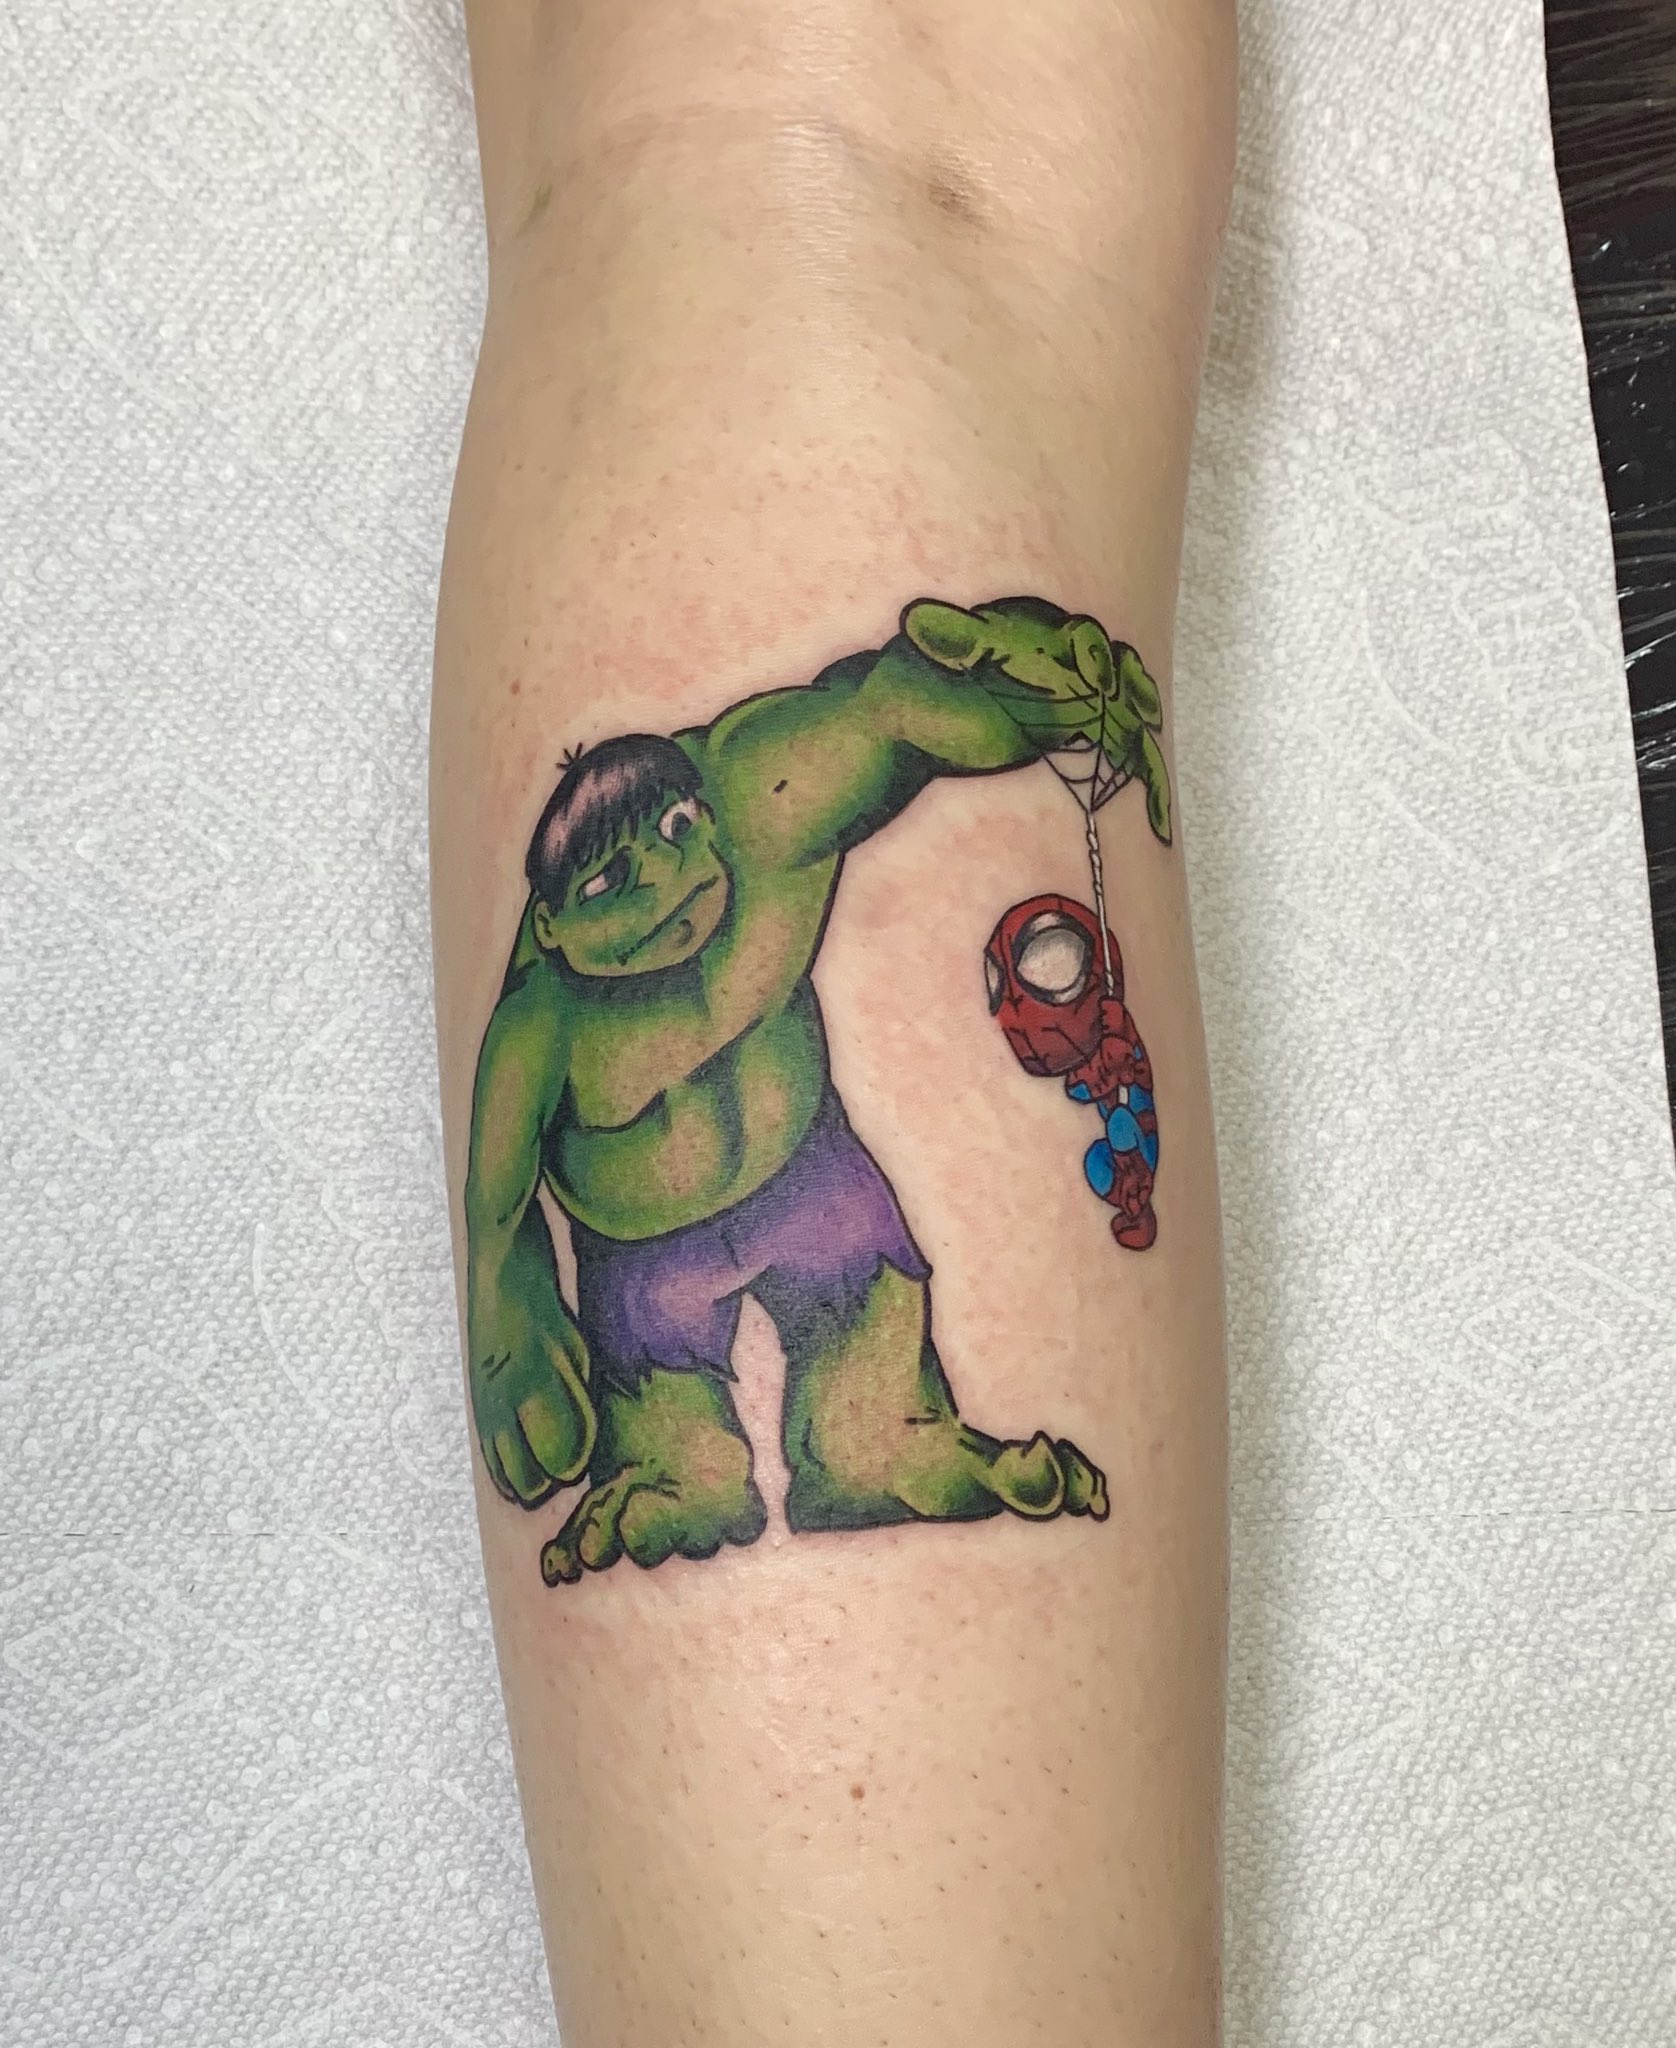 Hulk smash -tattoo | Marvel tattoos, Tattoos, Hulk tattoo